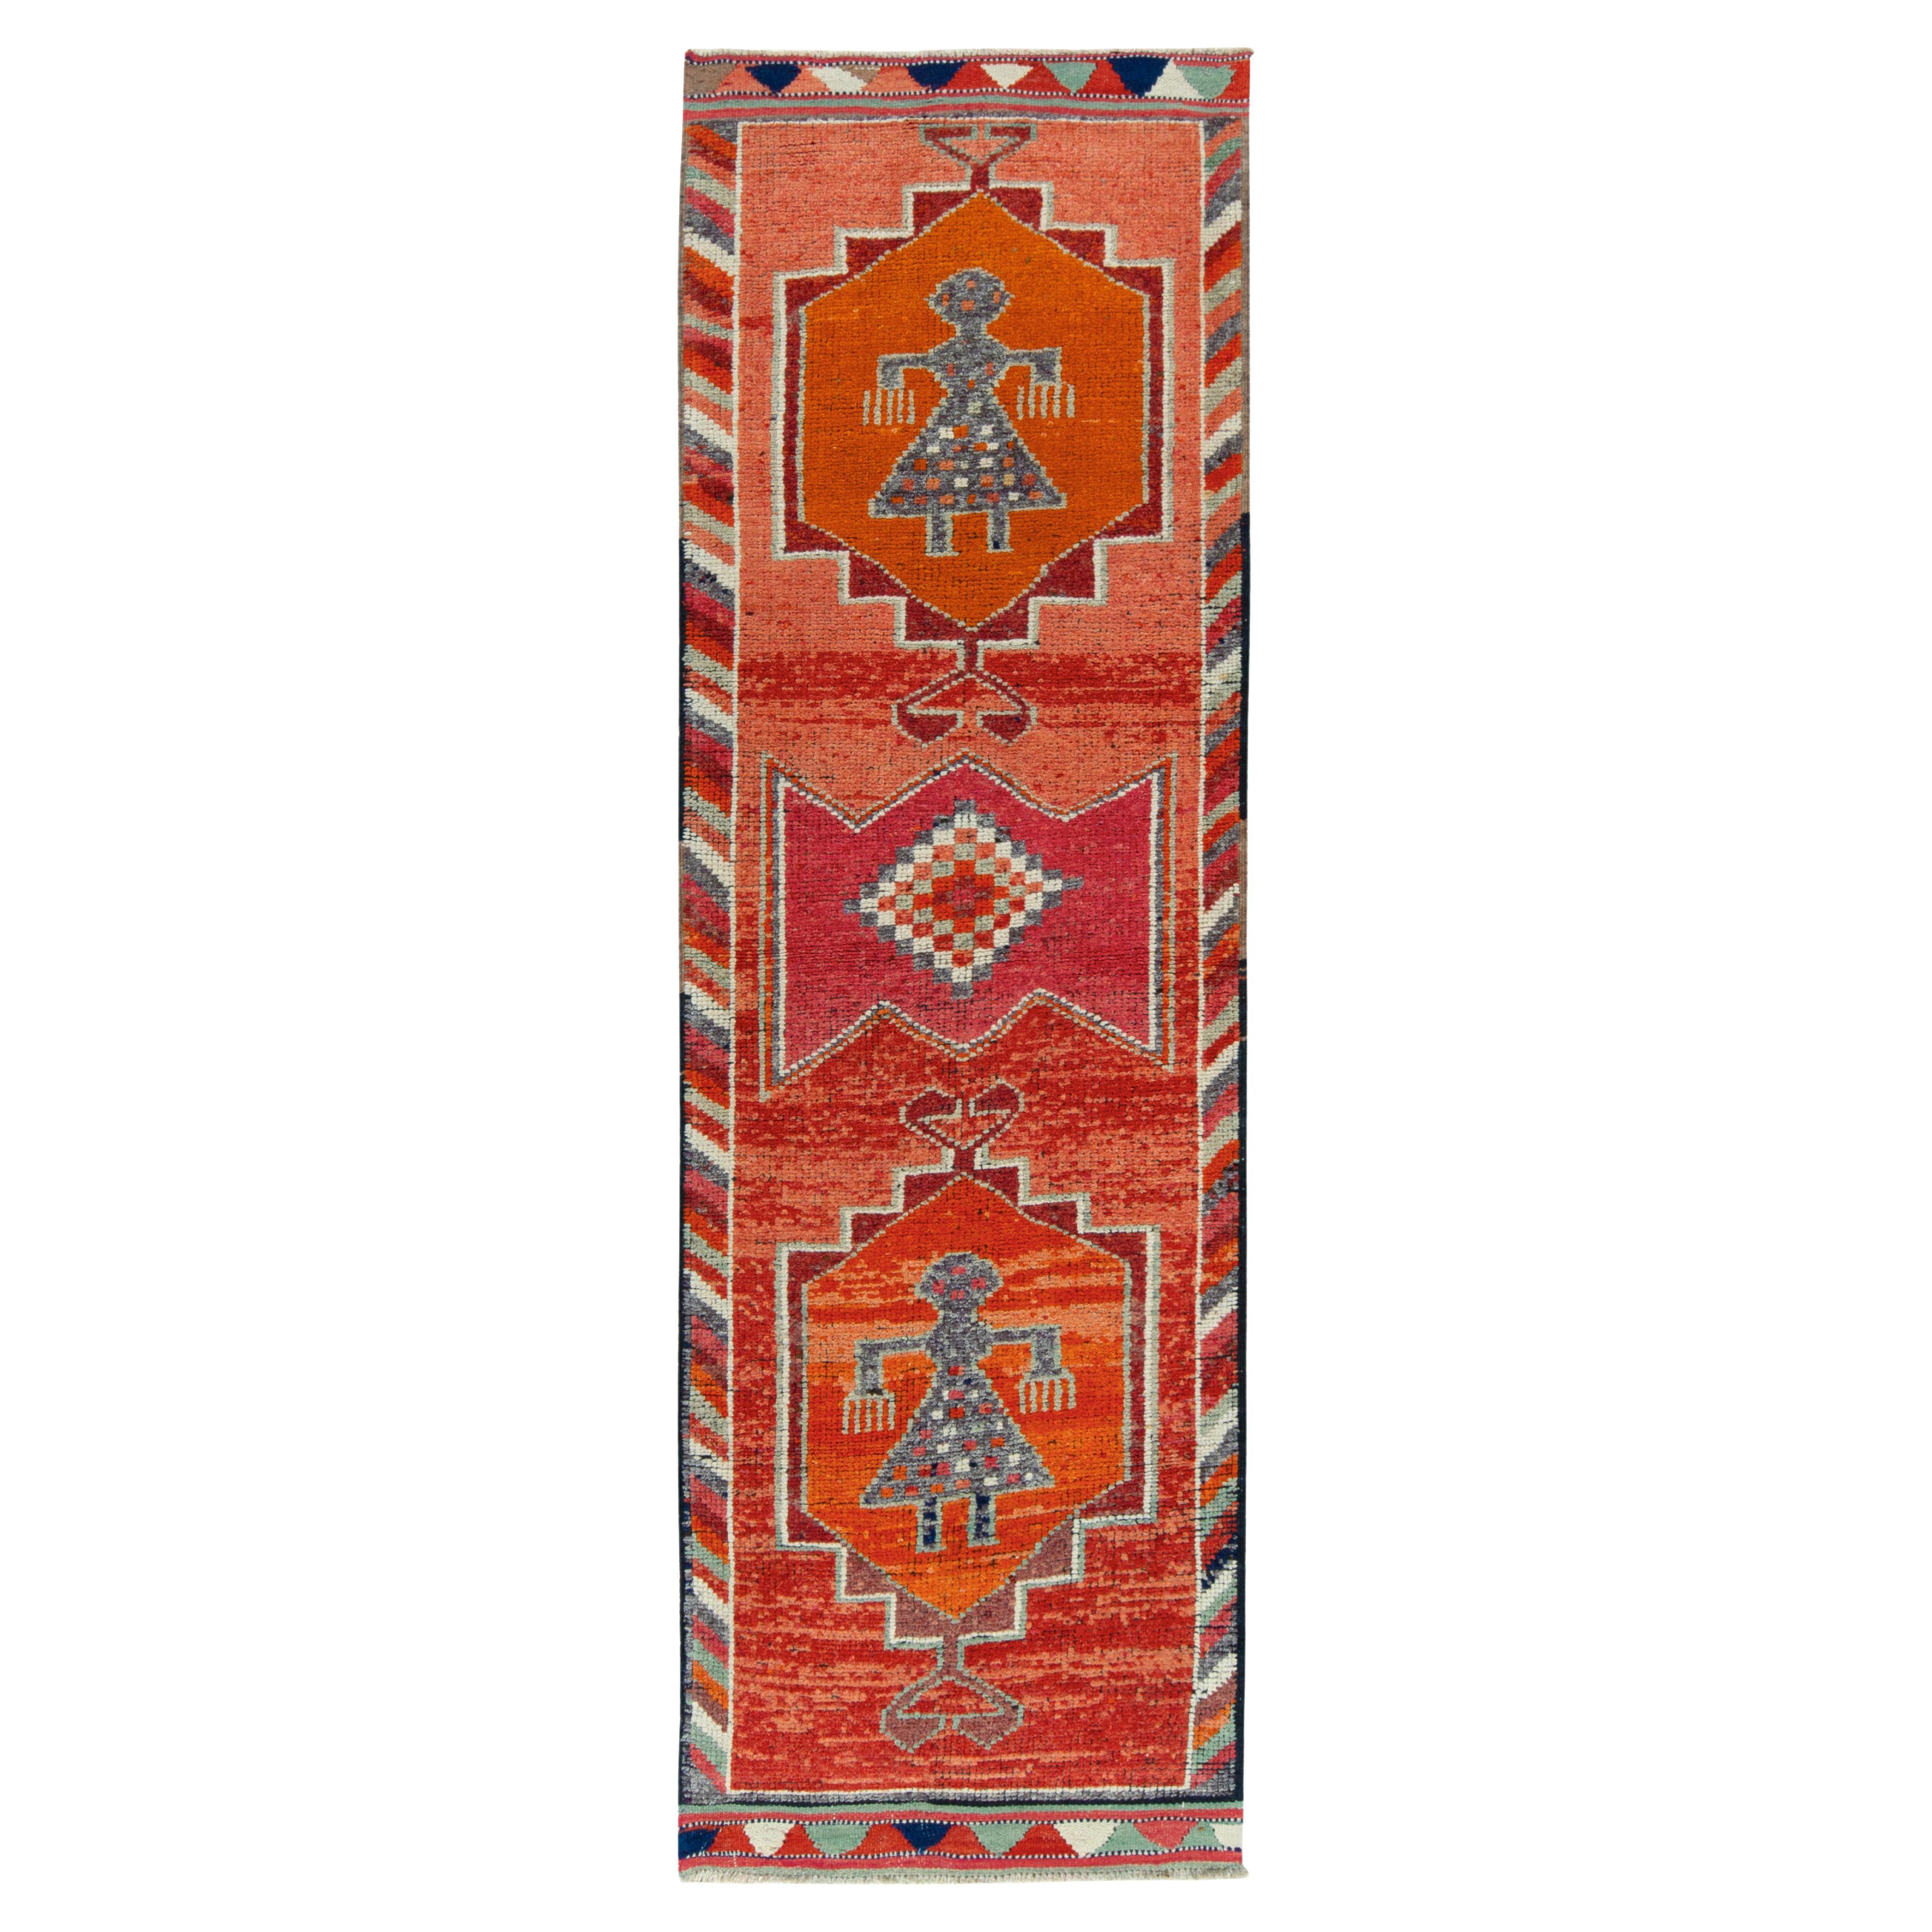 1950er Jahre Vintage Stammeskunst-Teppich in Rot, Orange und geometrischem Muster von Teppich & Kelim